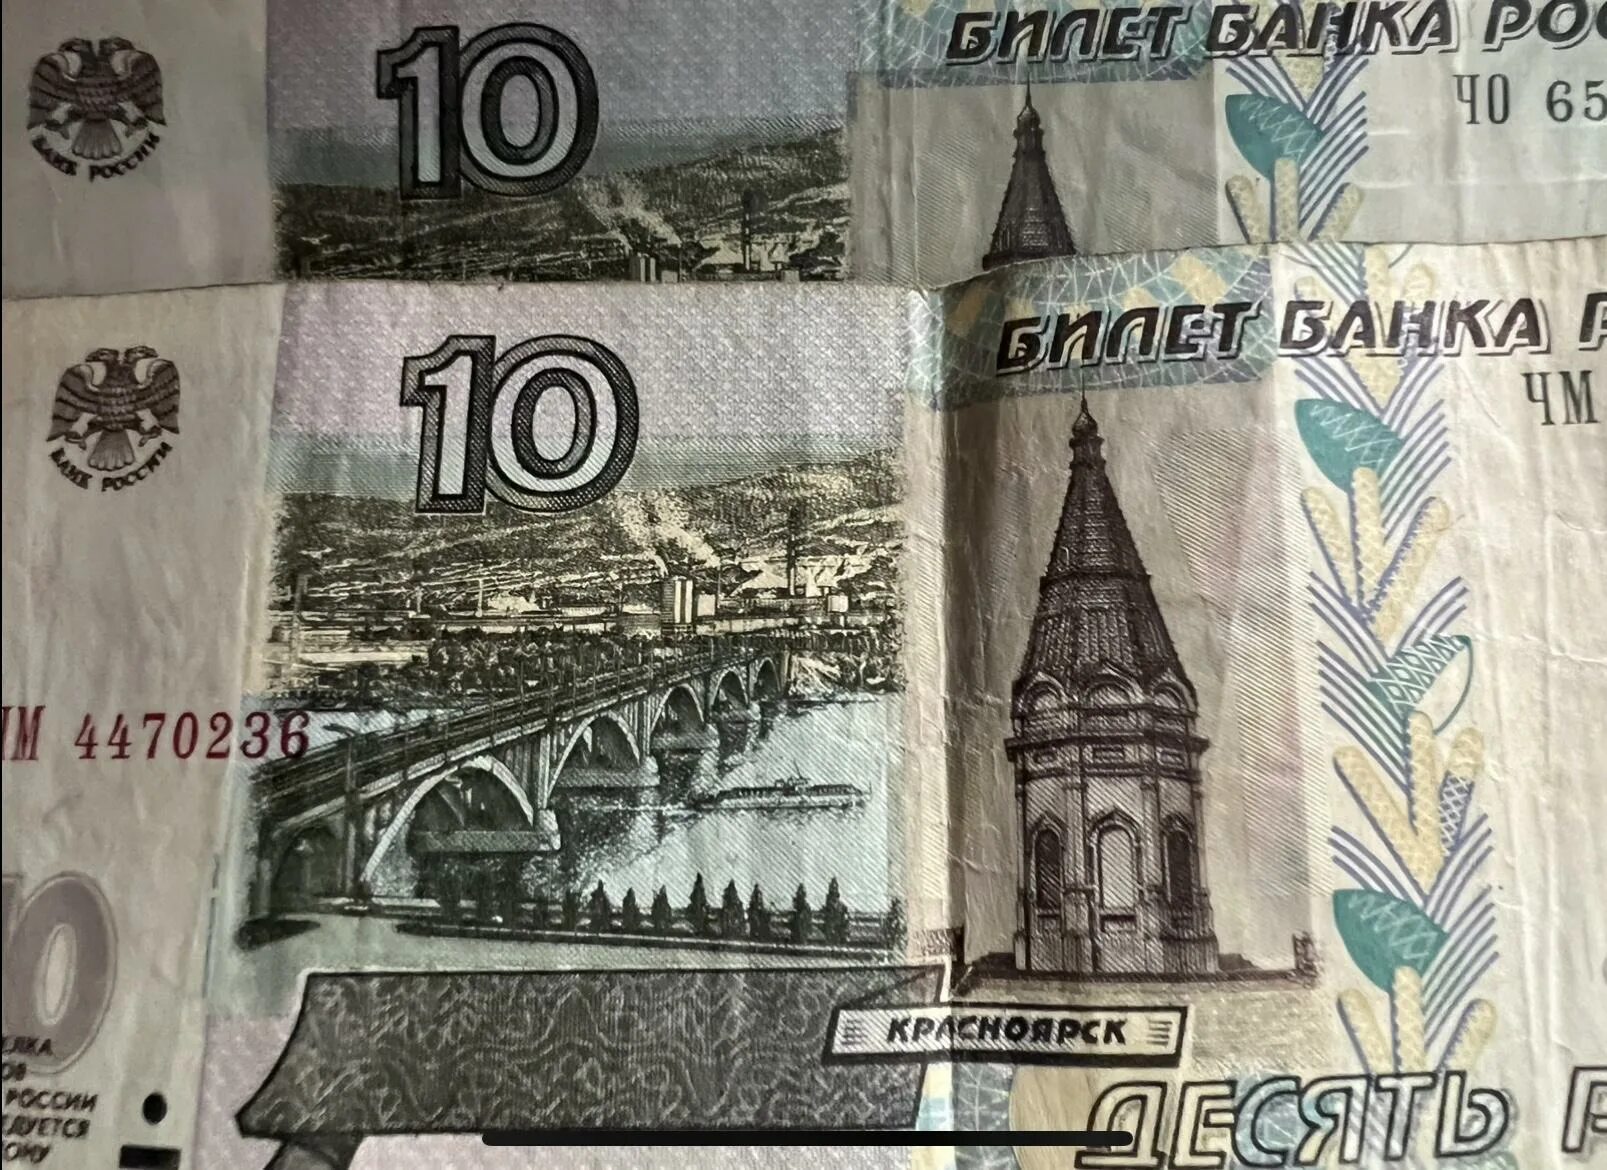 10 Рублей купюра. 10 Рублей банкнота. Купюры номиналом 5 и 10 рублей. Купюра номиналом 5 рублей.